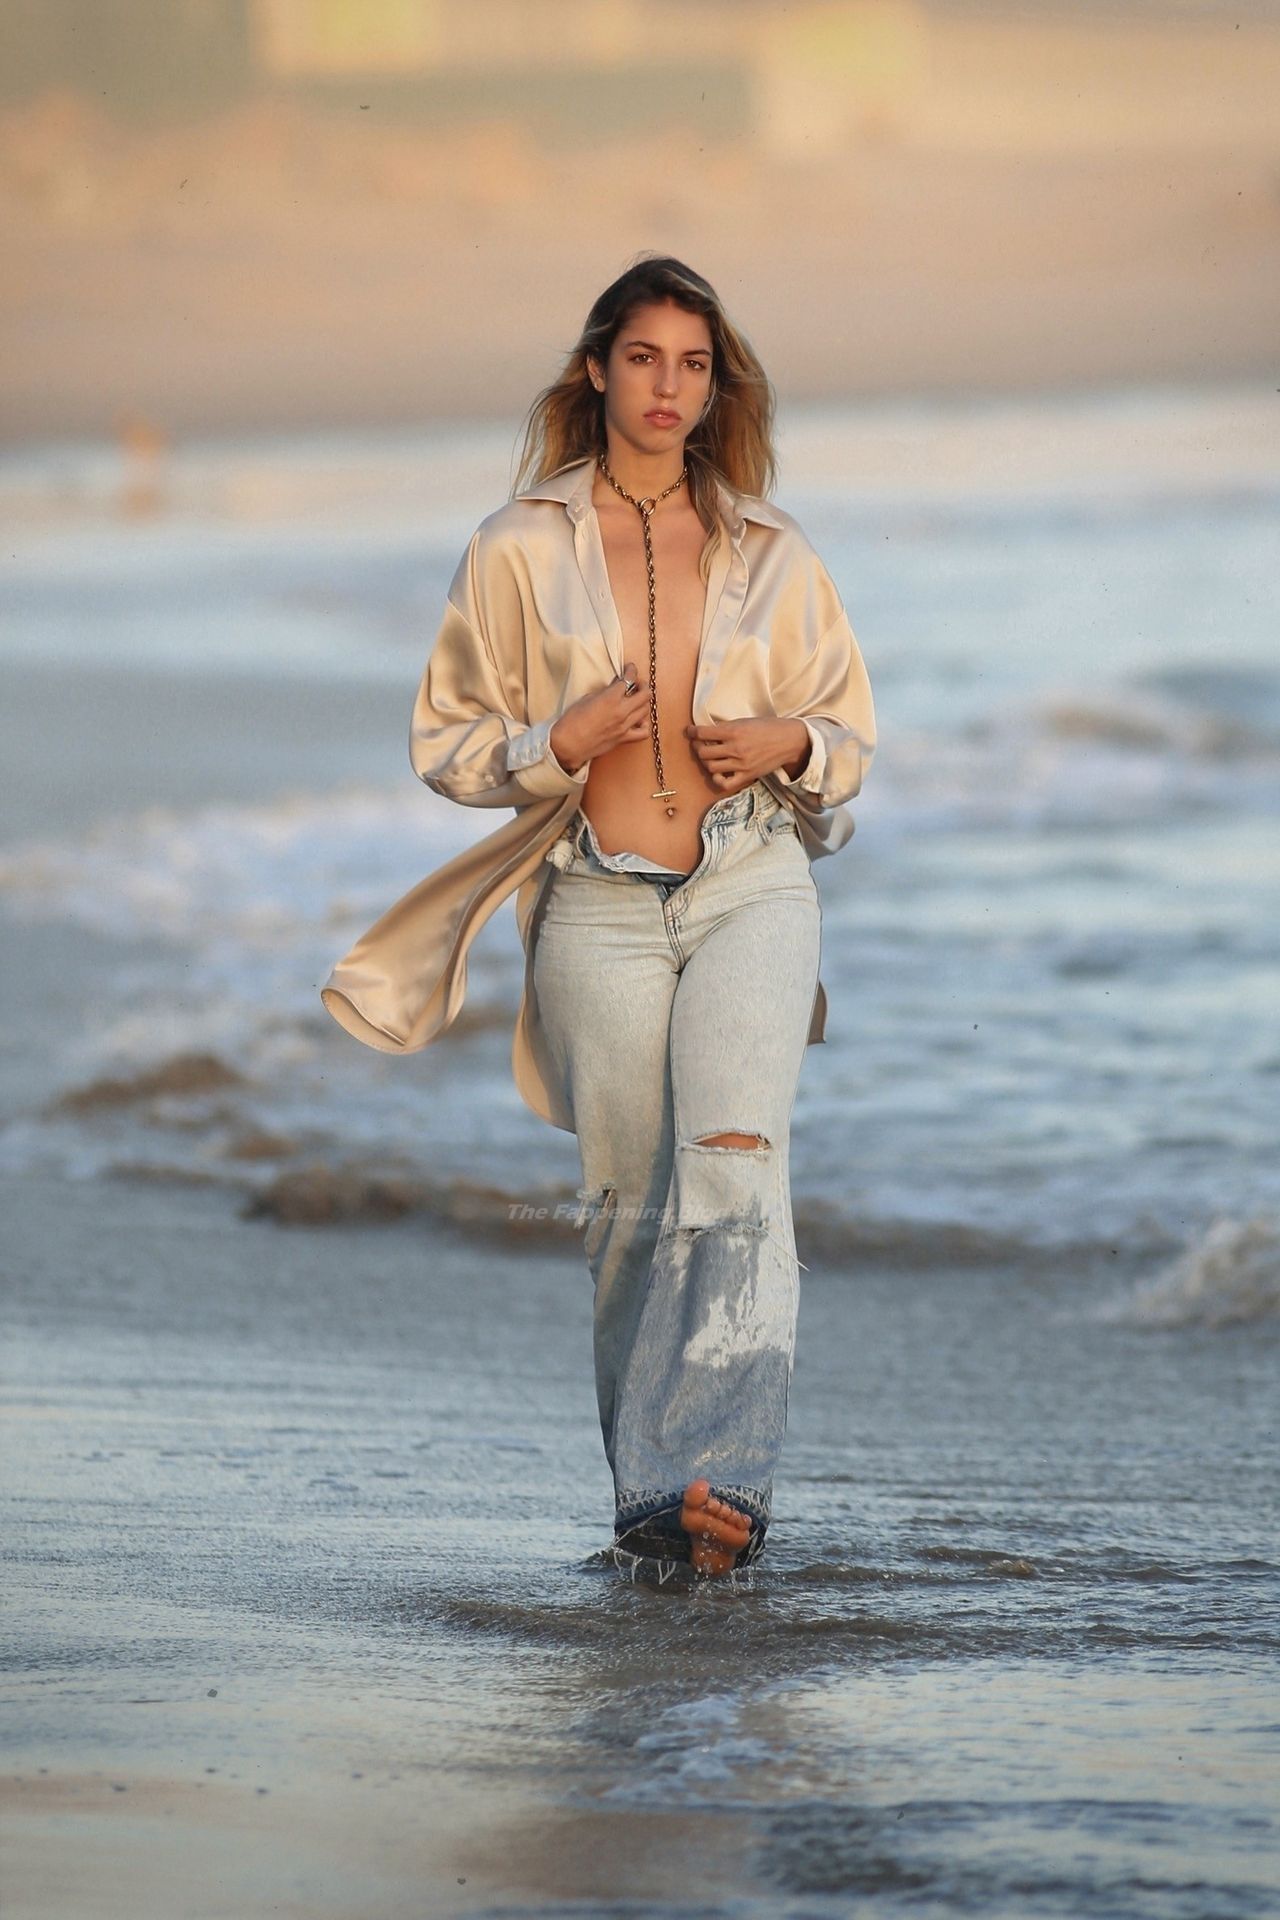 Bridgette Audrey Has a Wardrobe Malfunction on the Beach in LA (69 Nude & Sexy Photos)